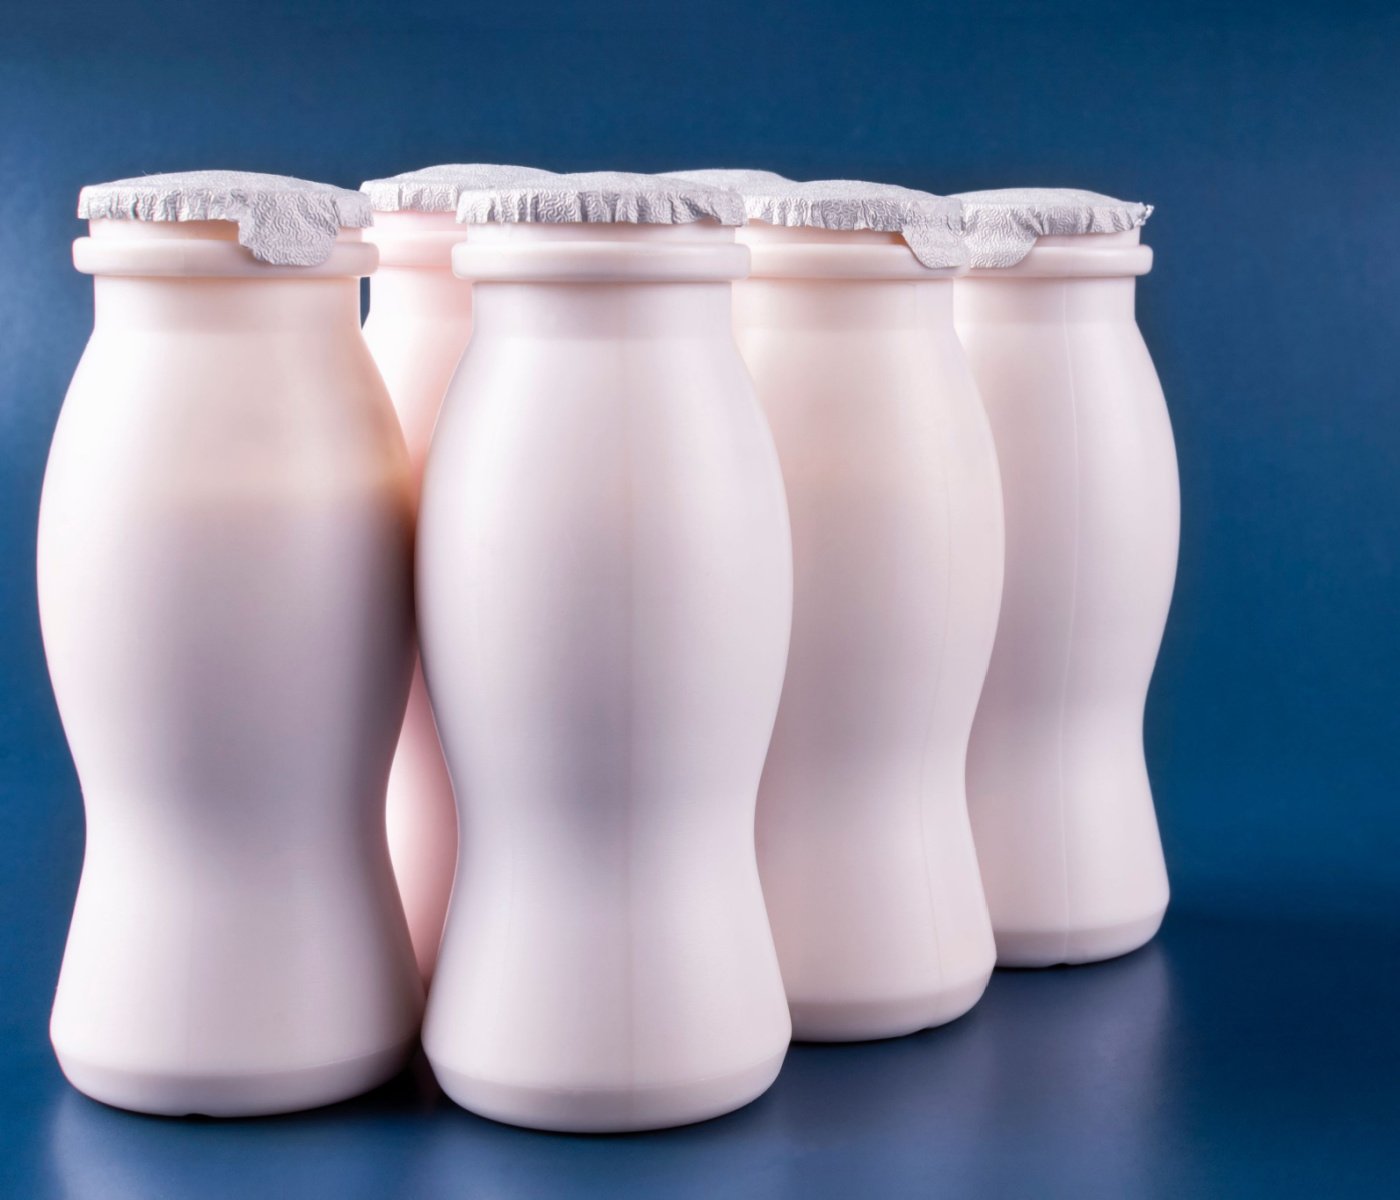 probiotic cultured milk